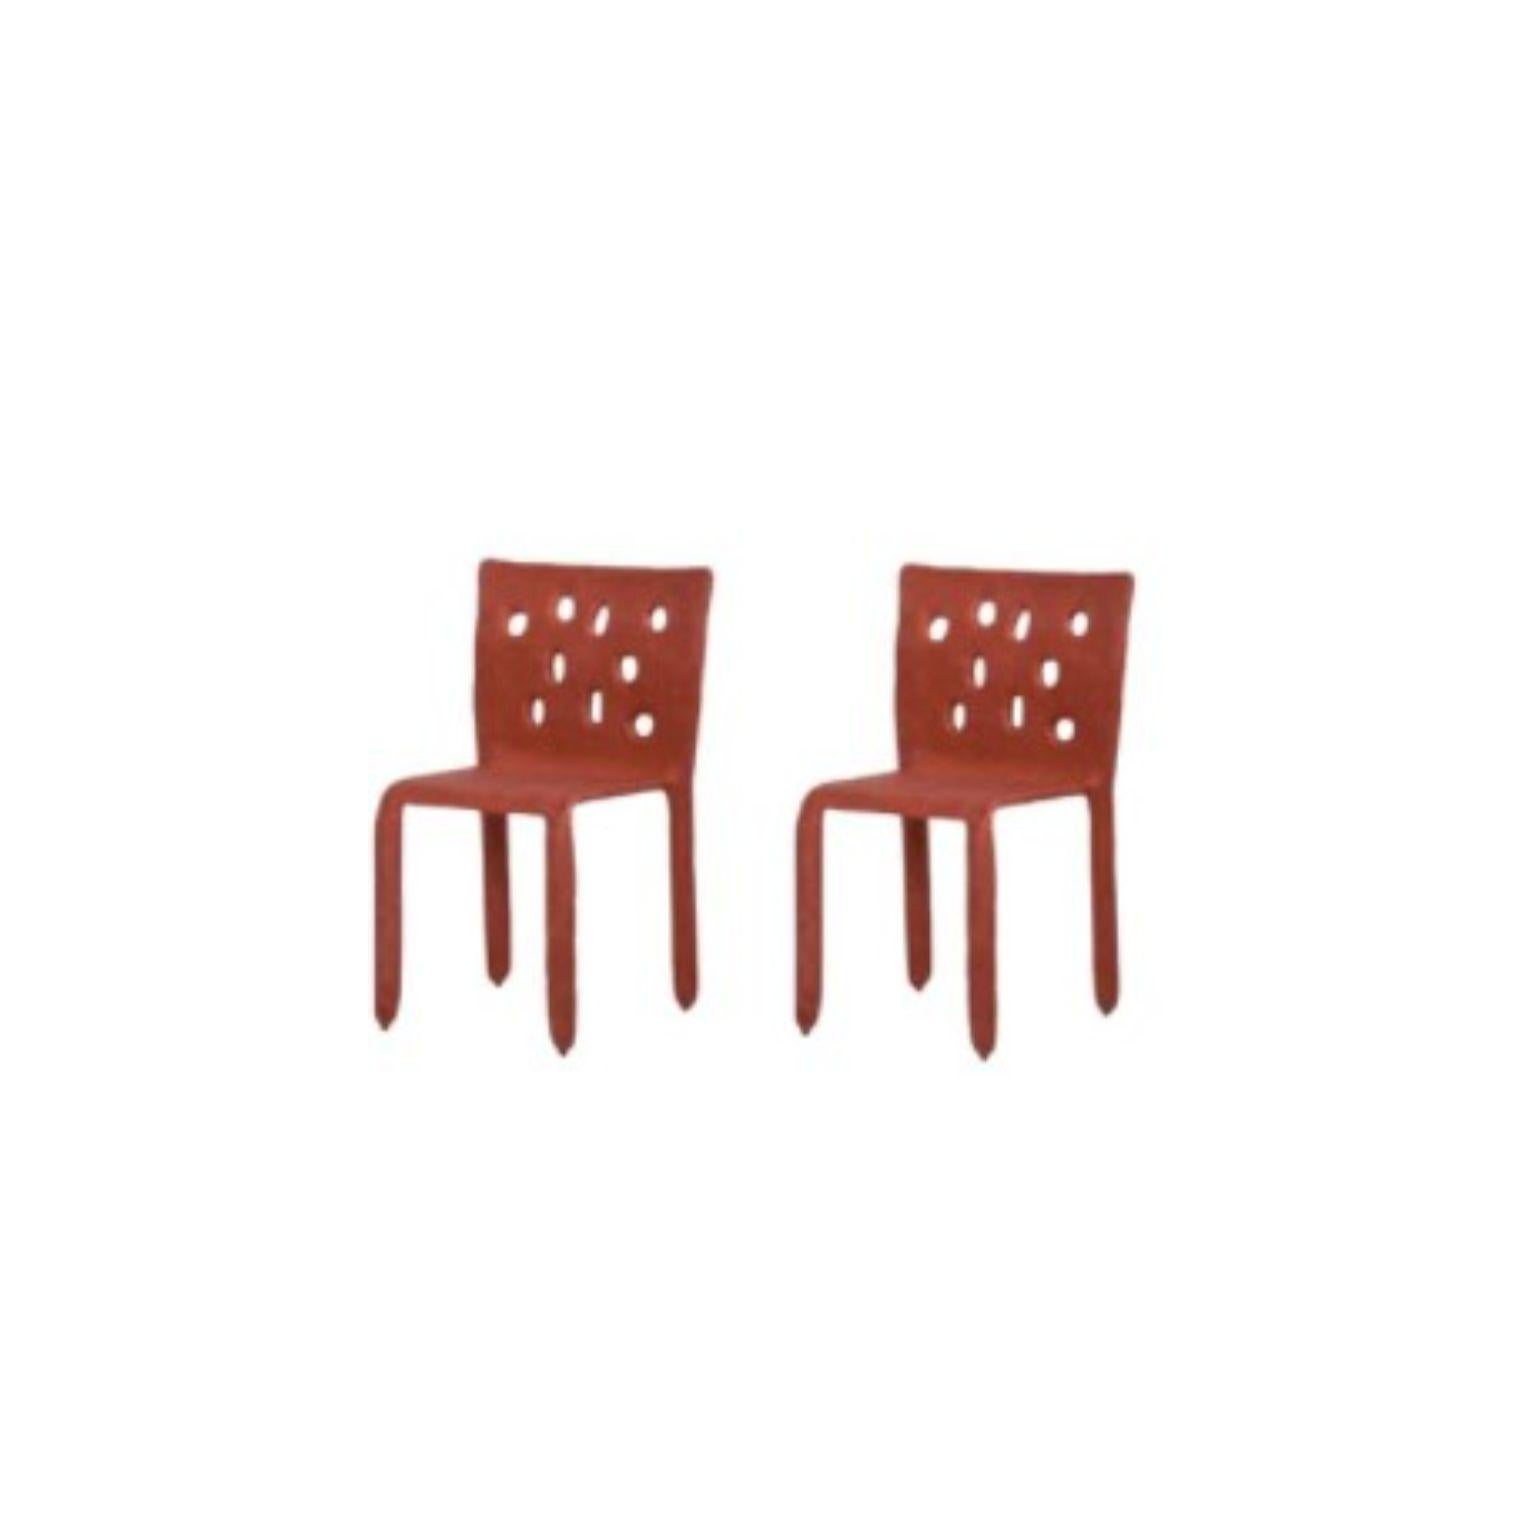 Ensemble de 2 chaises sculptées rouges de FAINA.
Design : Victoriya Yakusha
MATERIAL : acier, caoutchouc de lin, biopolymère, cellulose.
Dimensions : Hauteur 82 x largeur 54 x profondeur des pieds 45 cm
 Poids : 15 kilos.

Conçus dans le style du